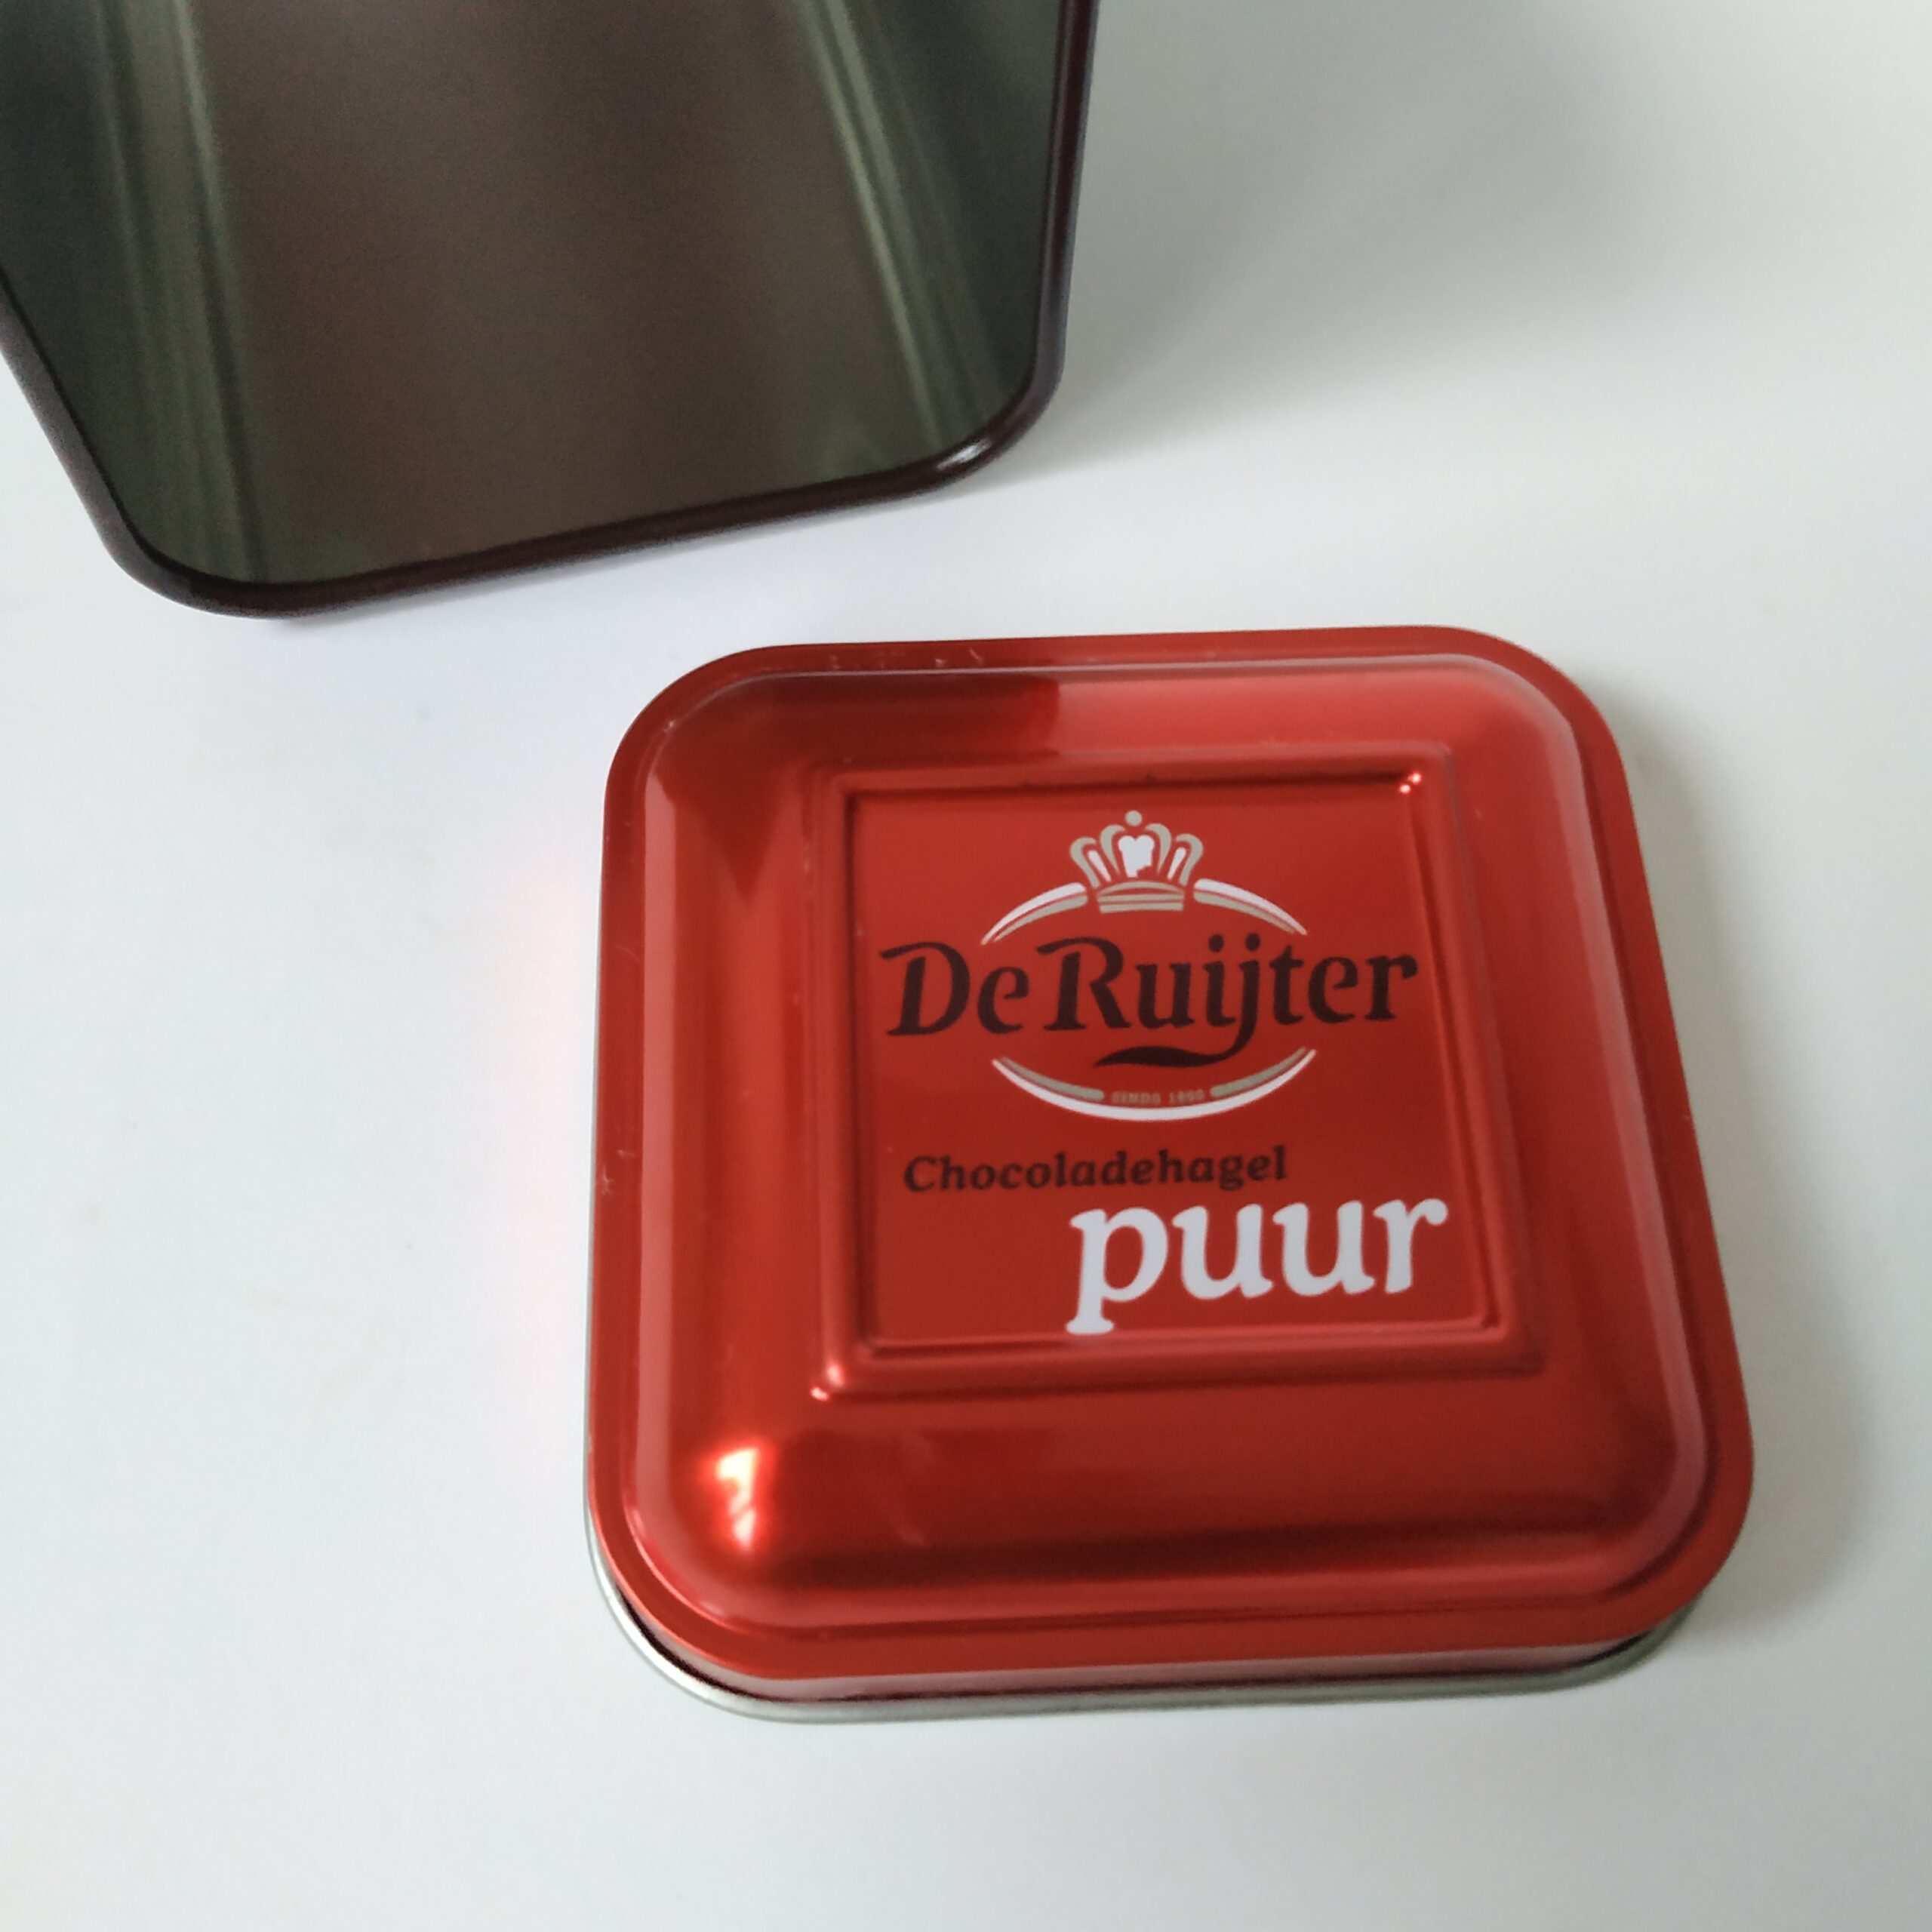 Blikje De Ruijter chocoladehagel puur – 13x7x7 cm (6)